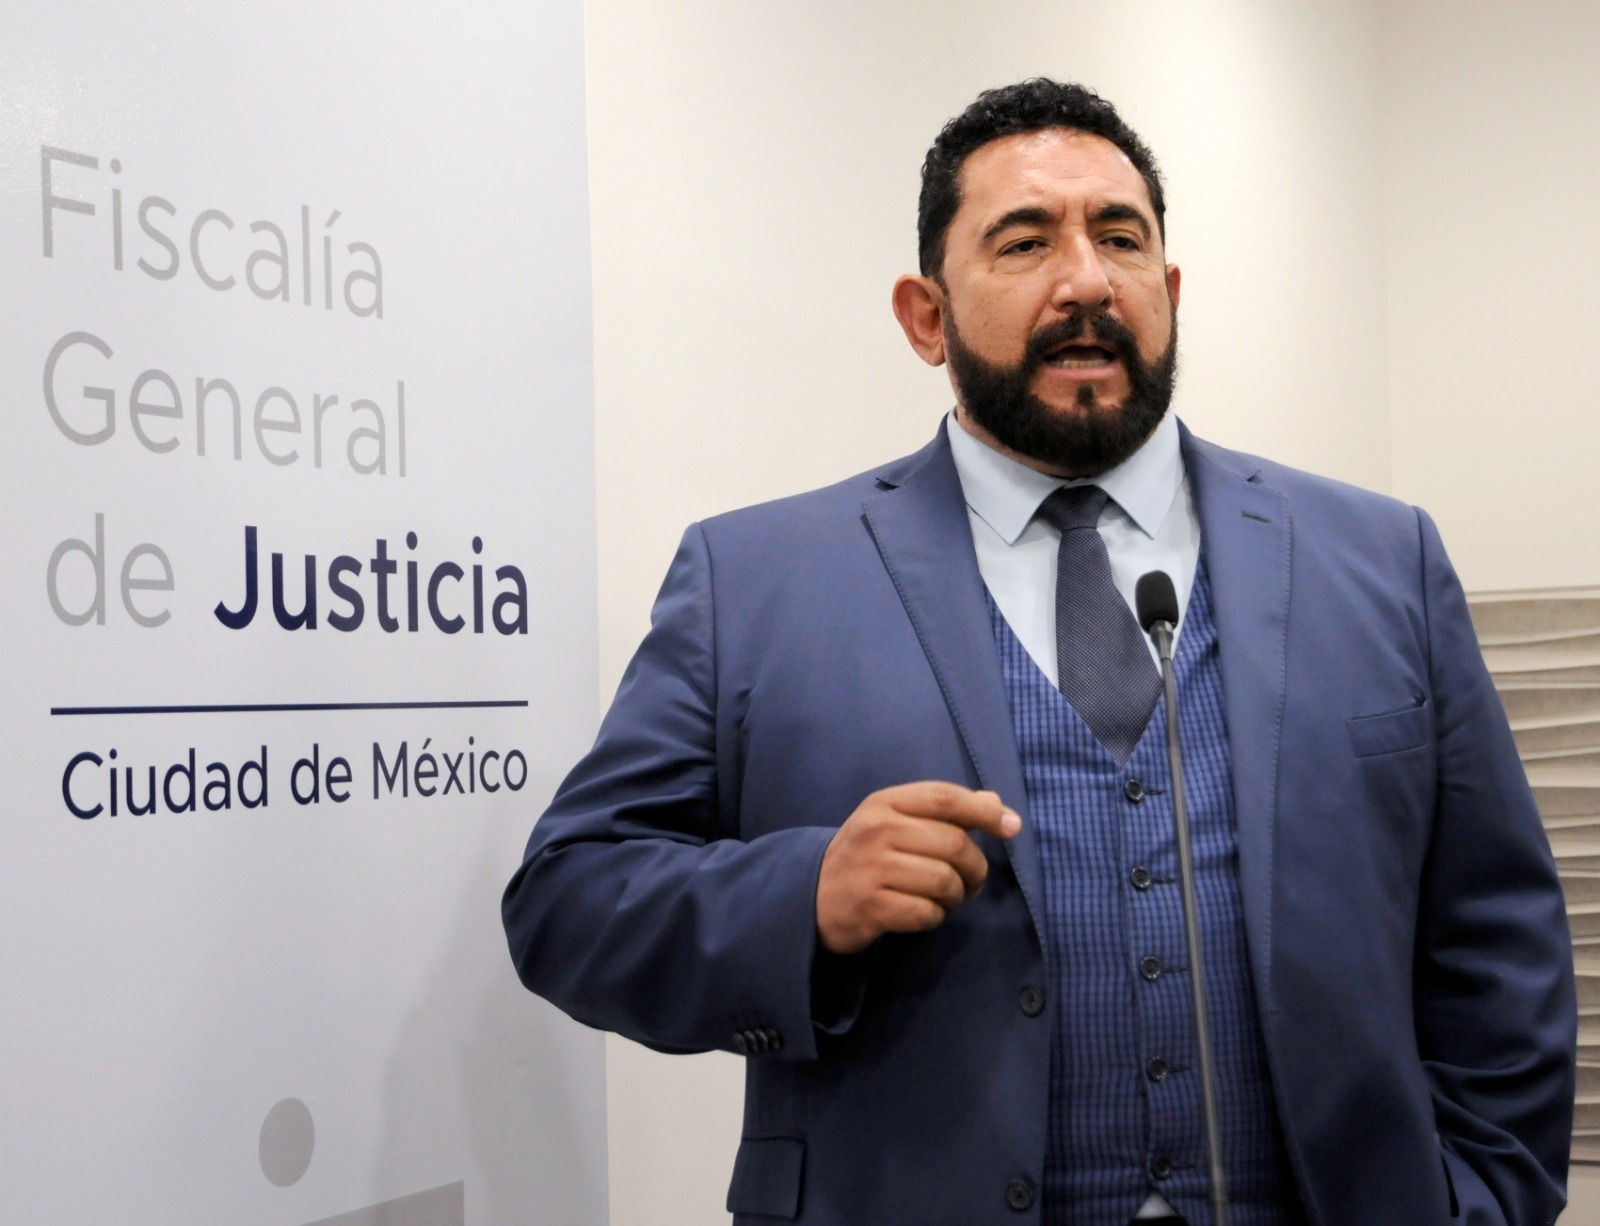 El vocero de la institución, Ulises Lara López, dio detalles sobre el modo de operar el llamado Cártel Inmobiliario  
(FGJCDMX)